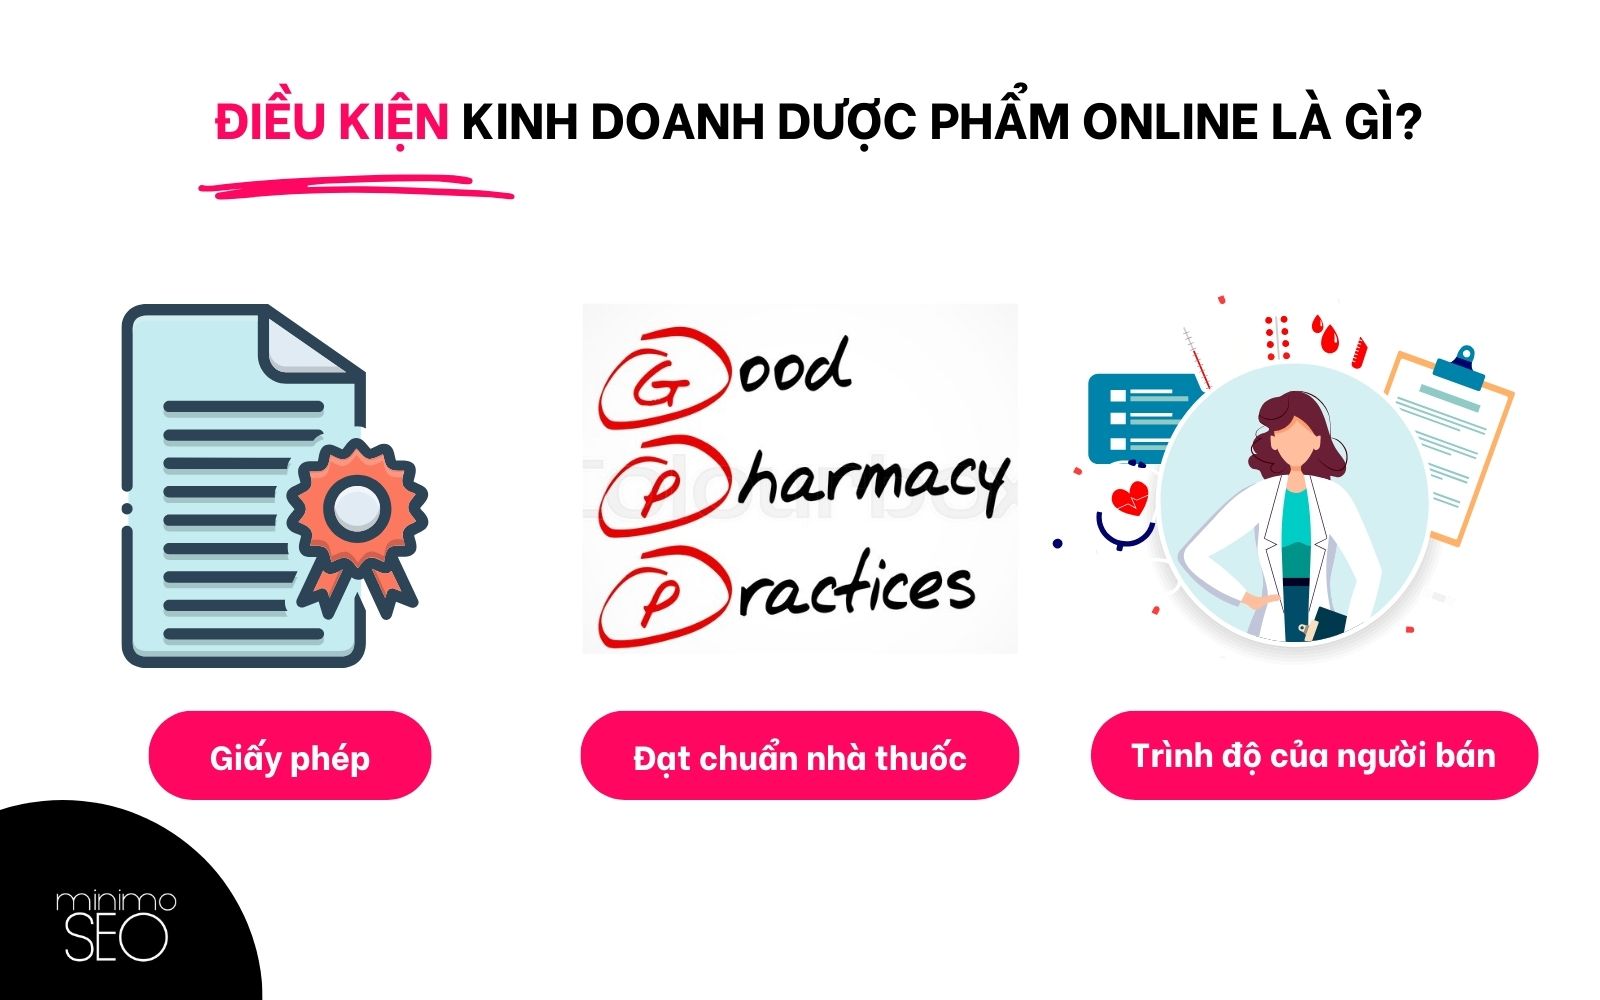 Điều kiện kinh doanh dược phẩm online là gì?